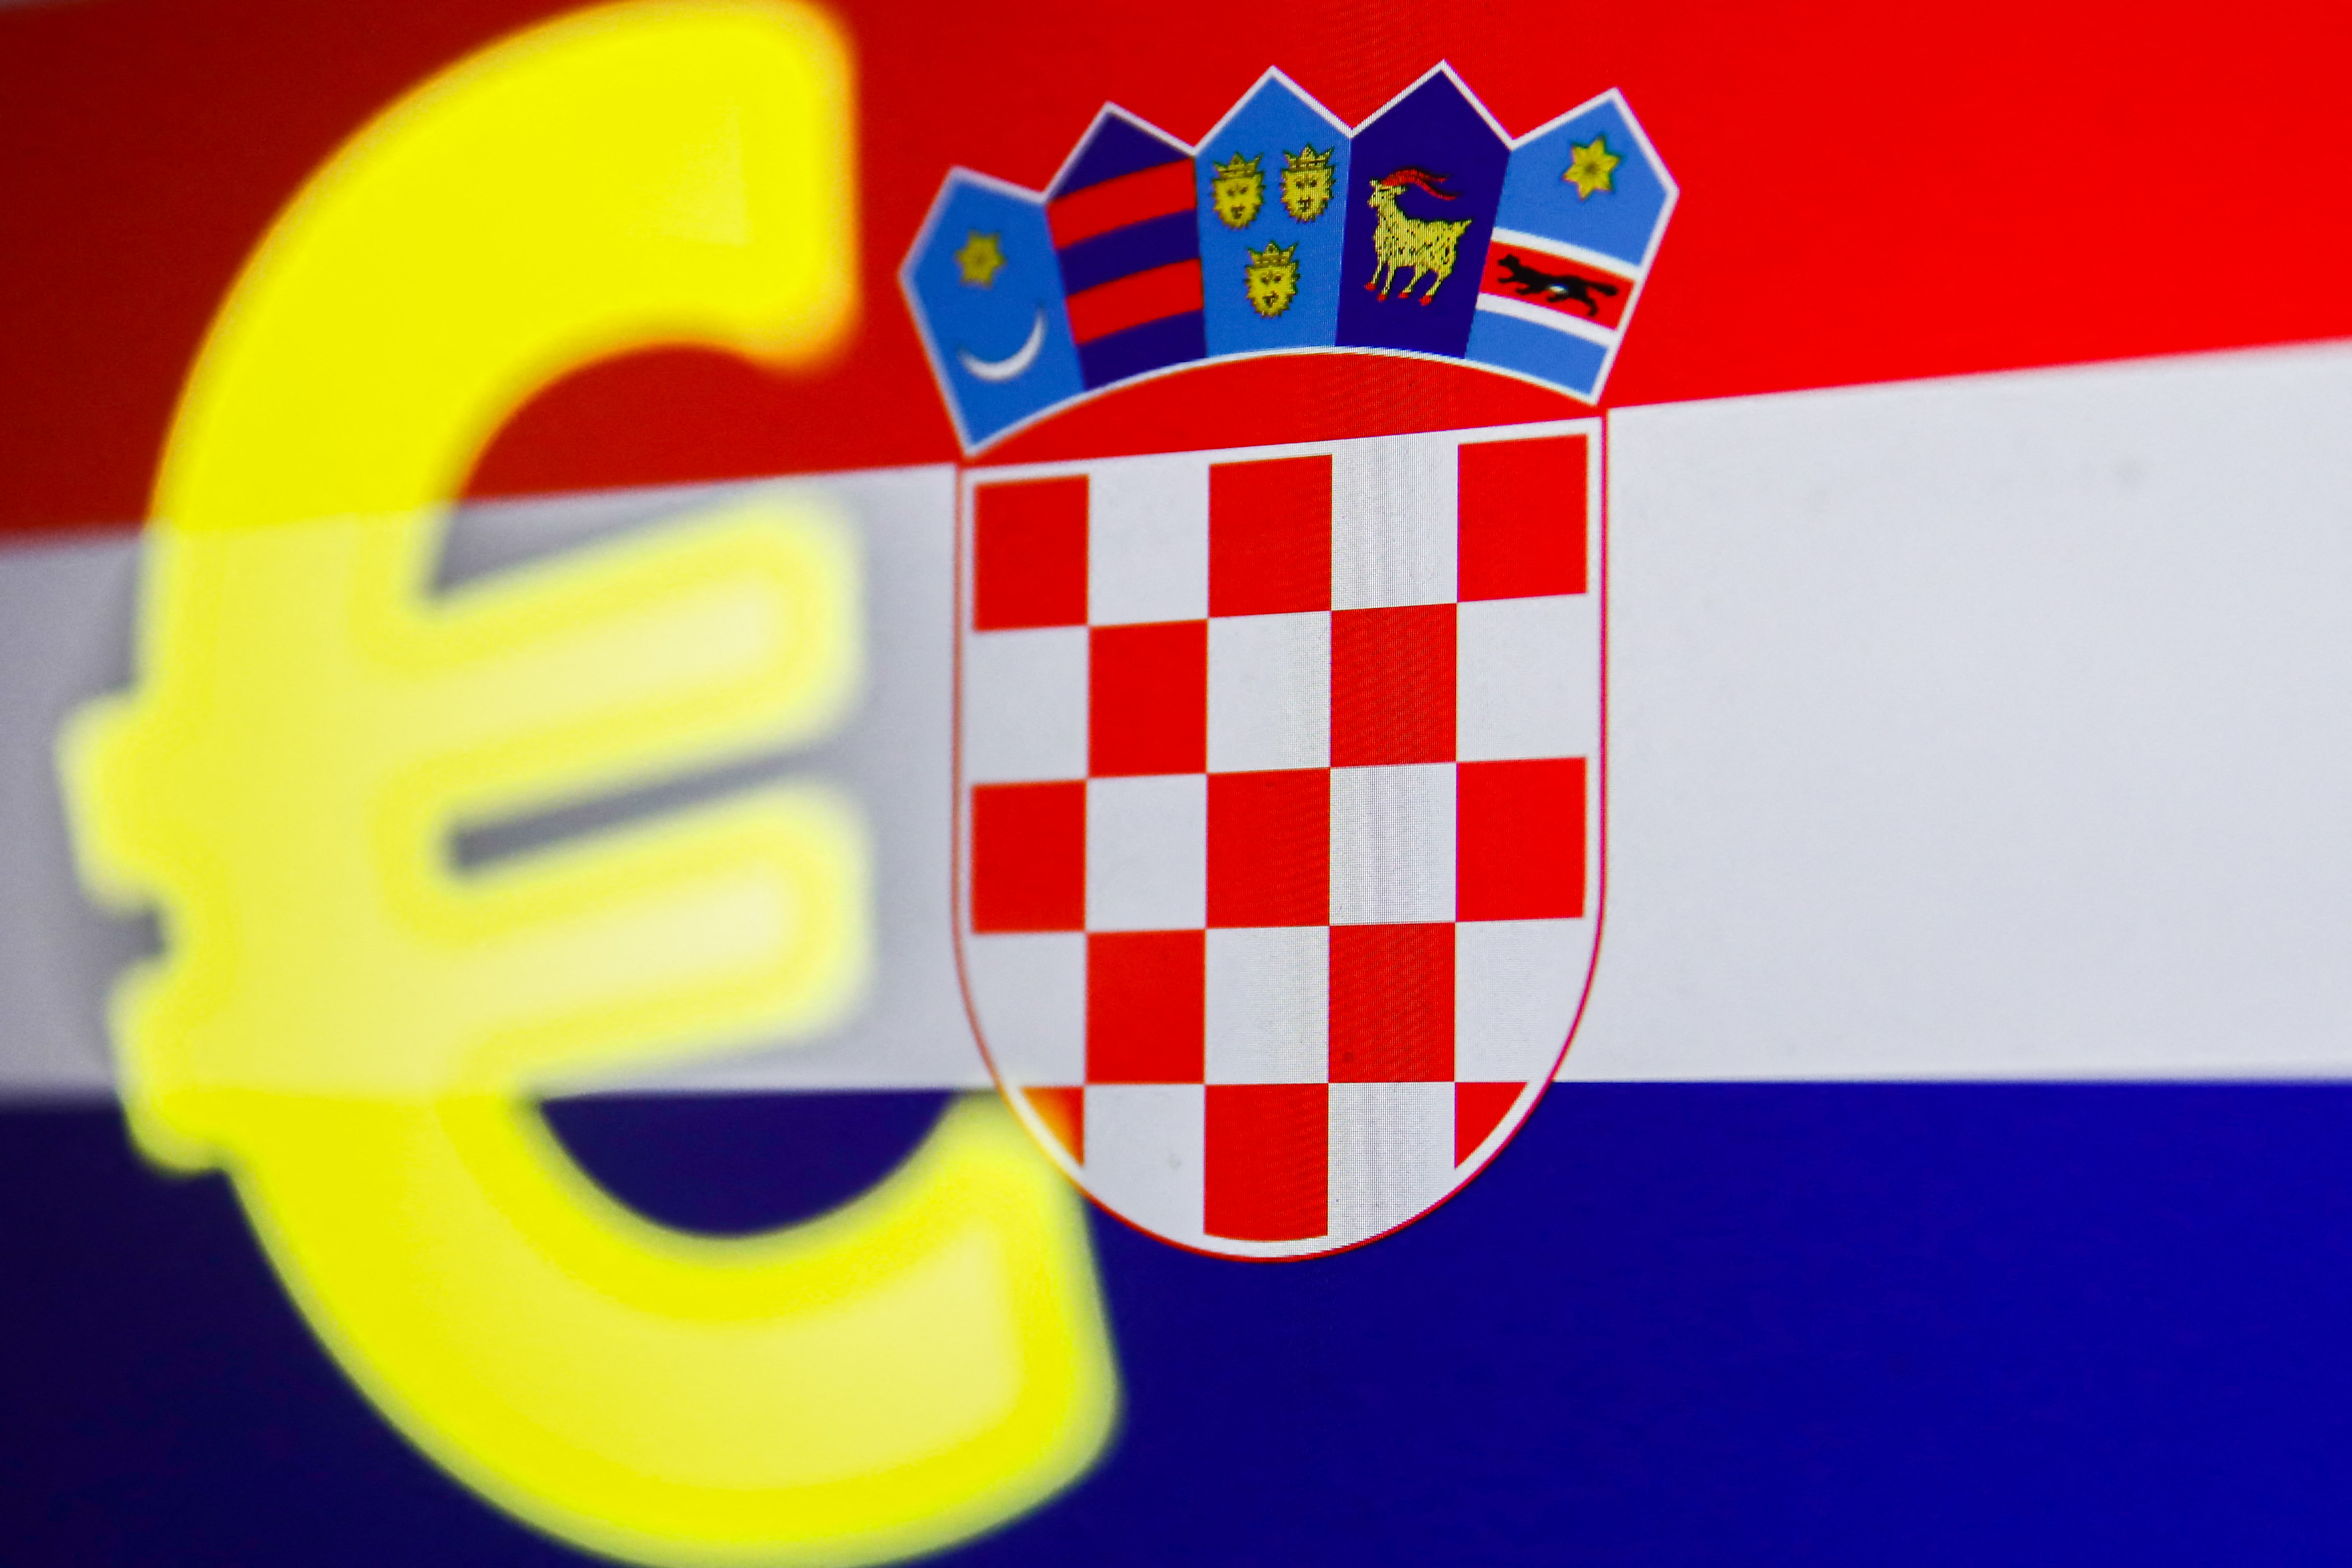 Zöld utat kapott az euró bevezetése Horvátországban